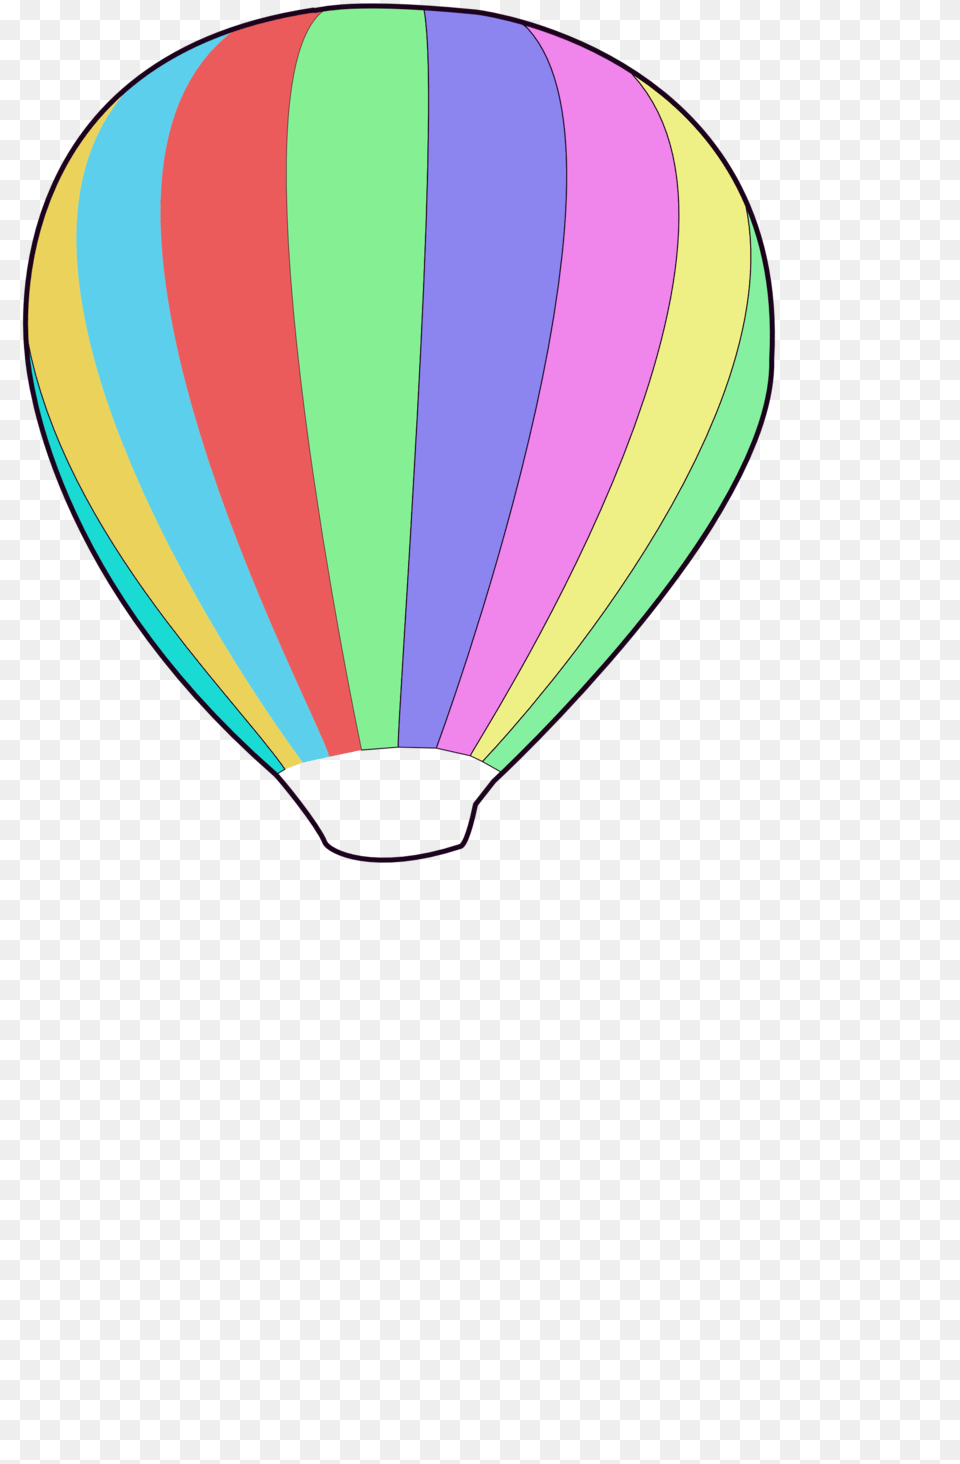 Image, Aircraft, Transportation, Vehicle, Hot Air Balloon Free Png Download